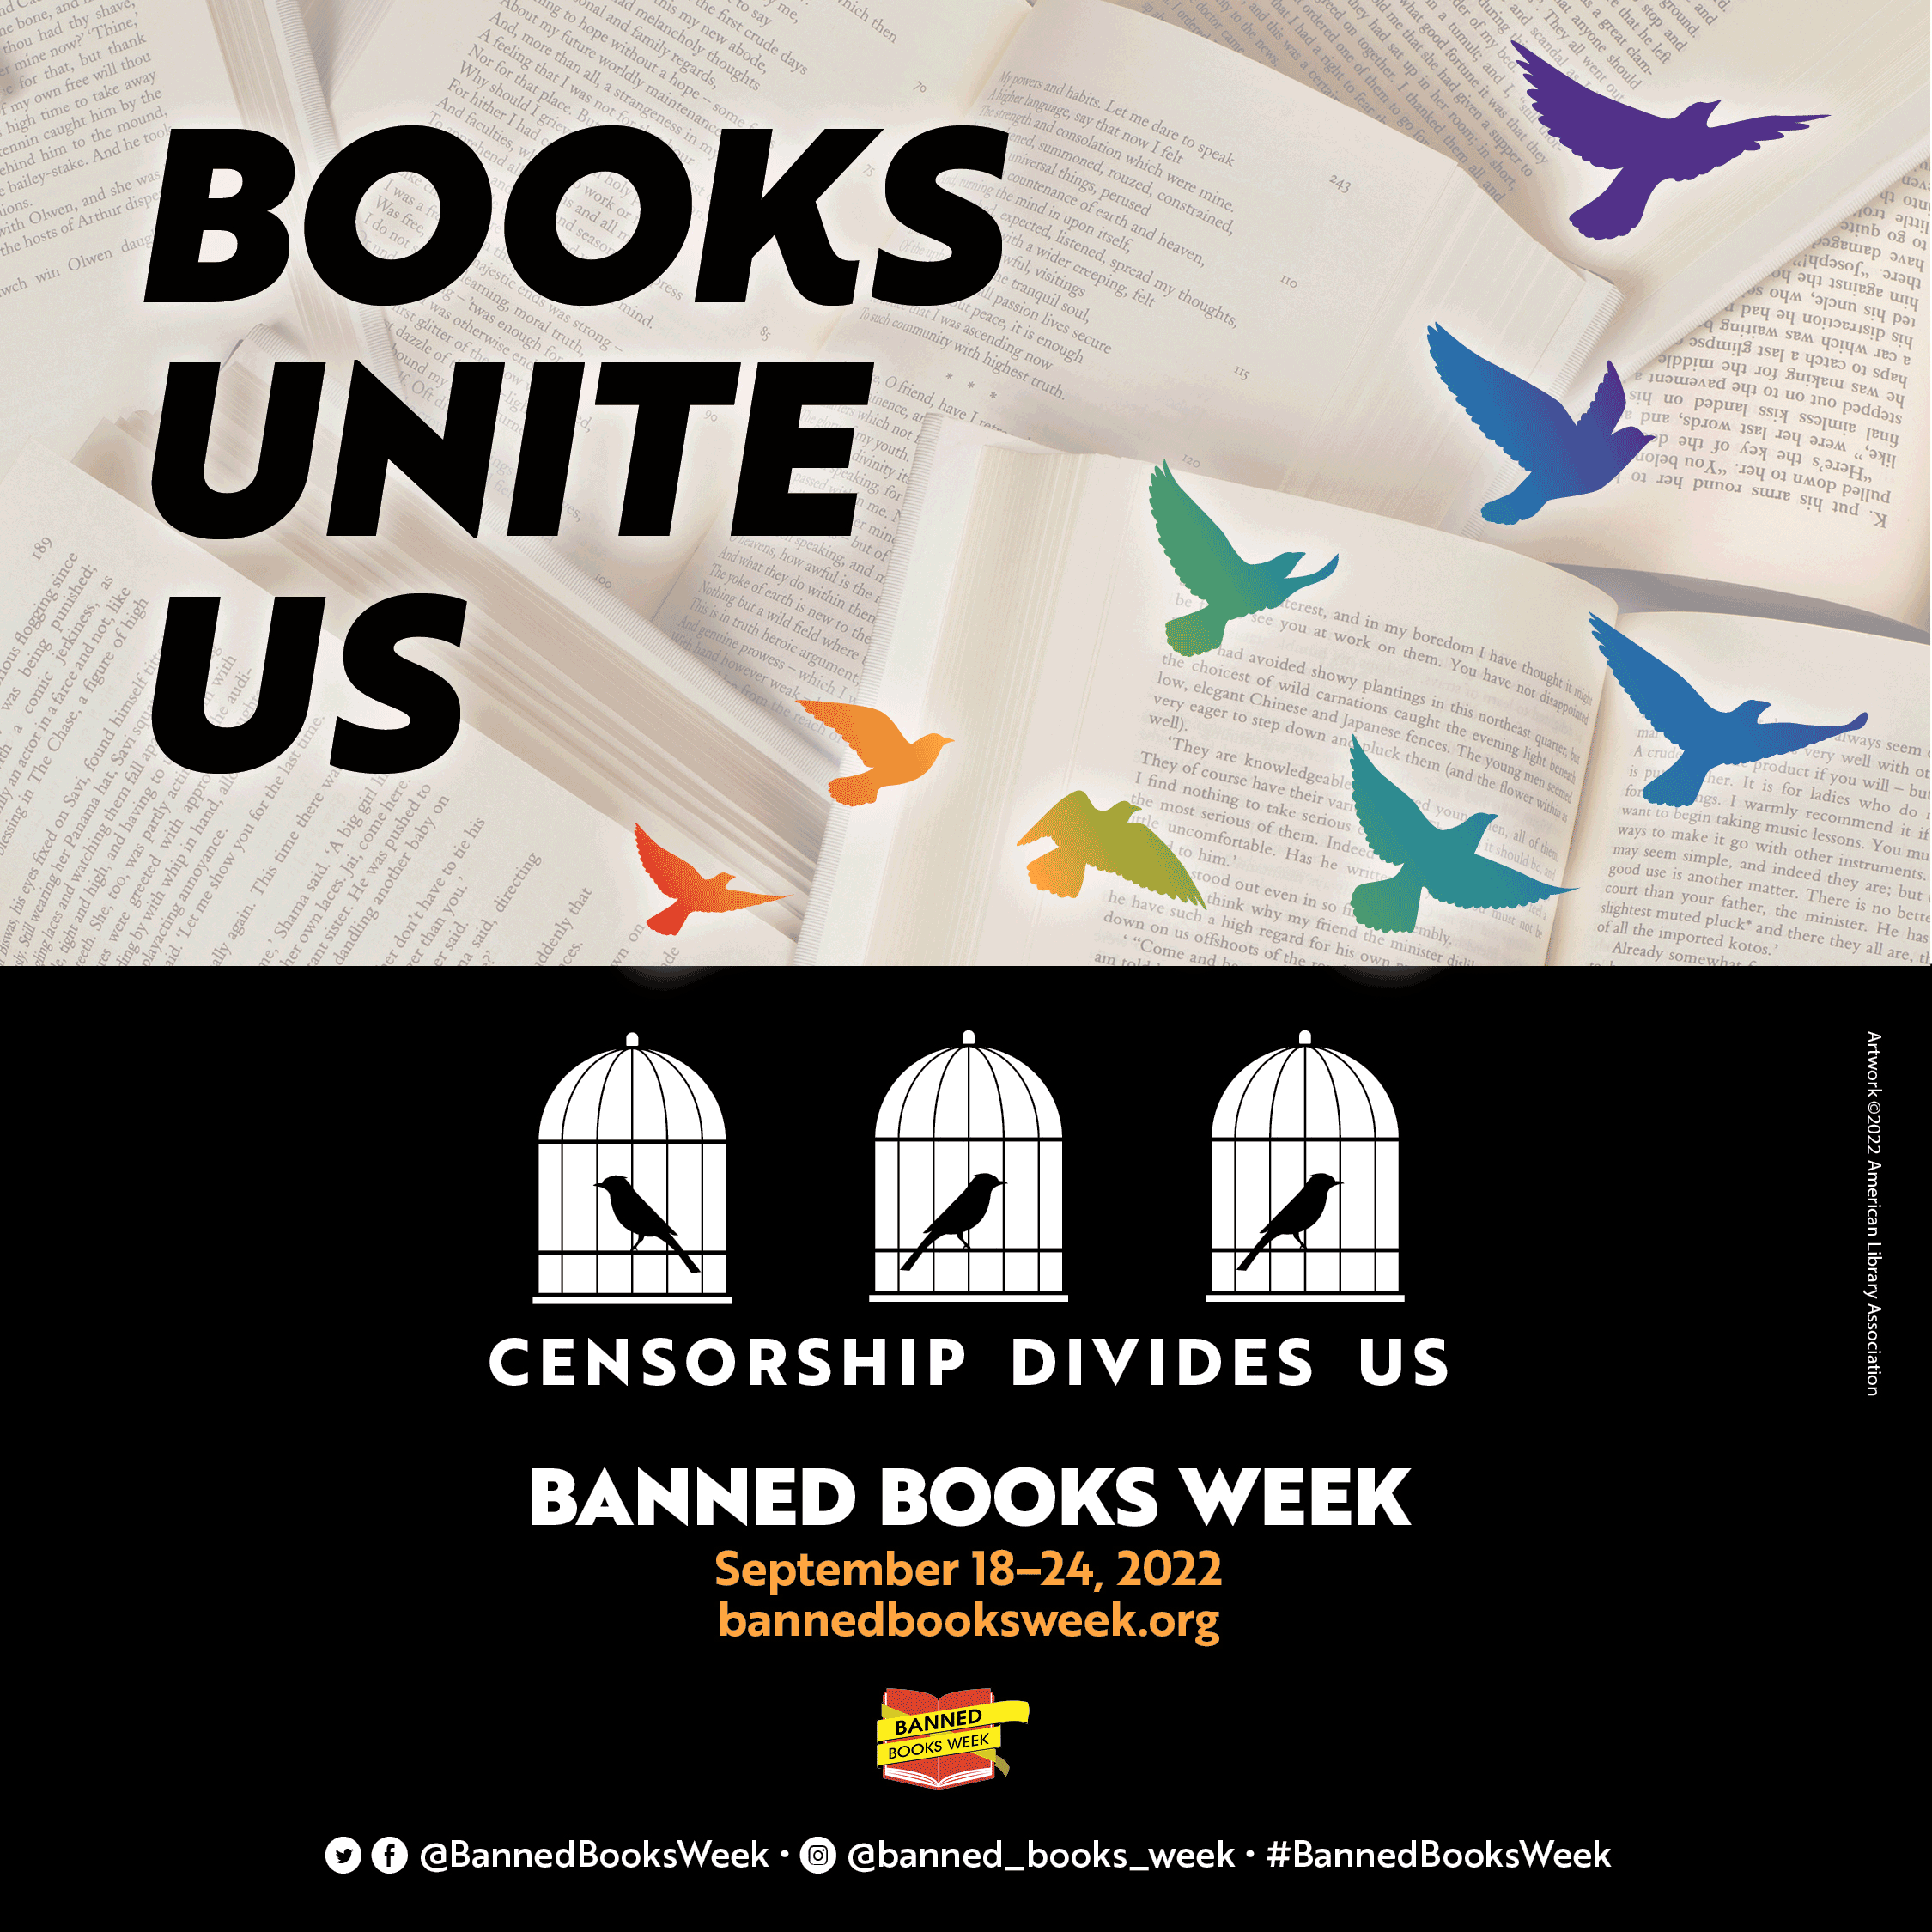 Books unite us